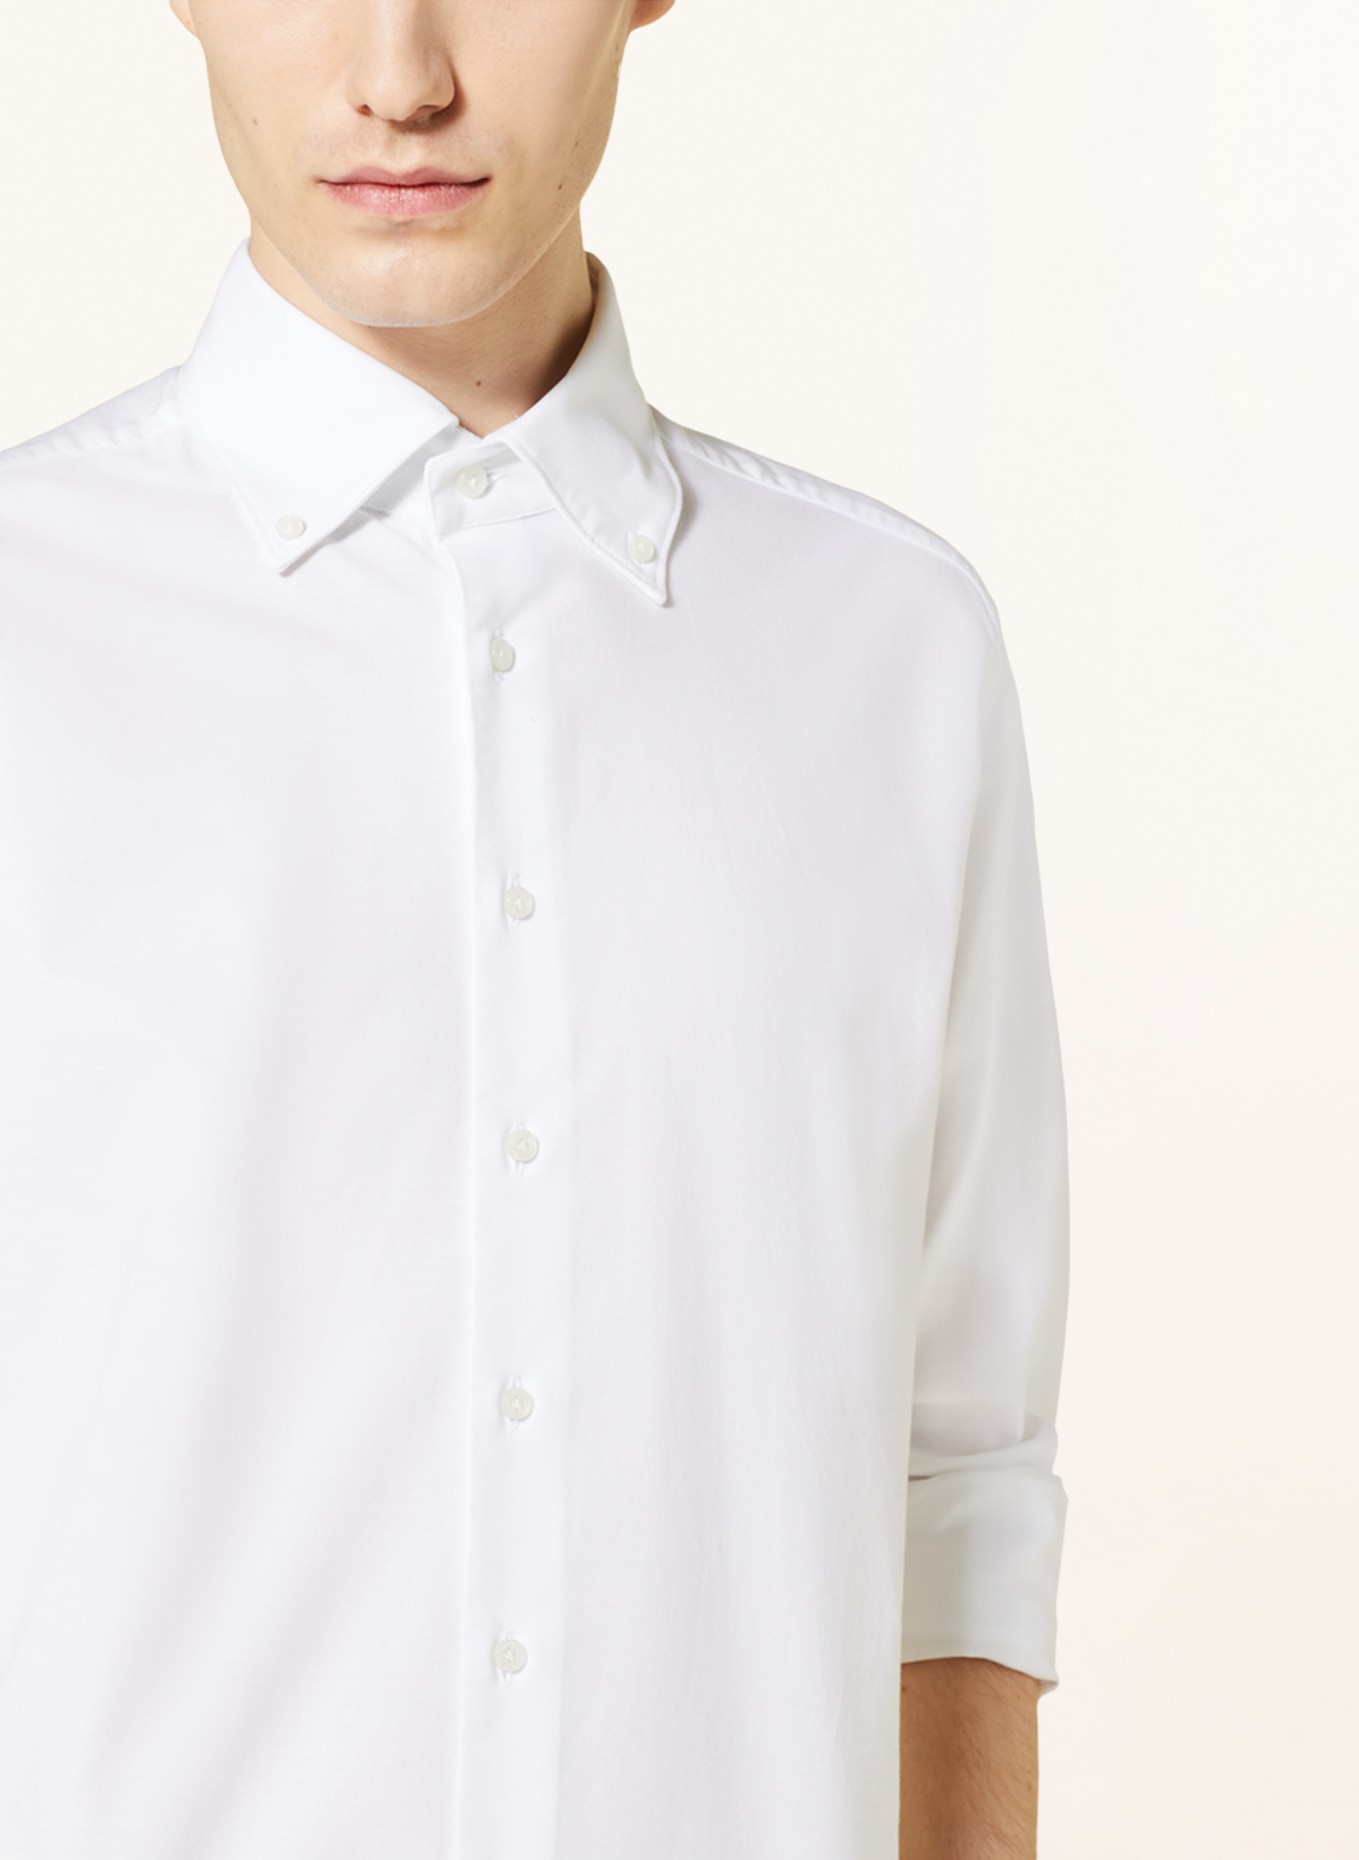 ARTIGIANO Shirt classic fit, Color: WHITE (Image 4)